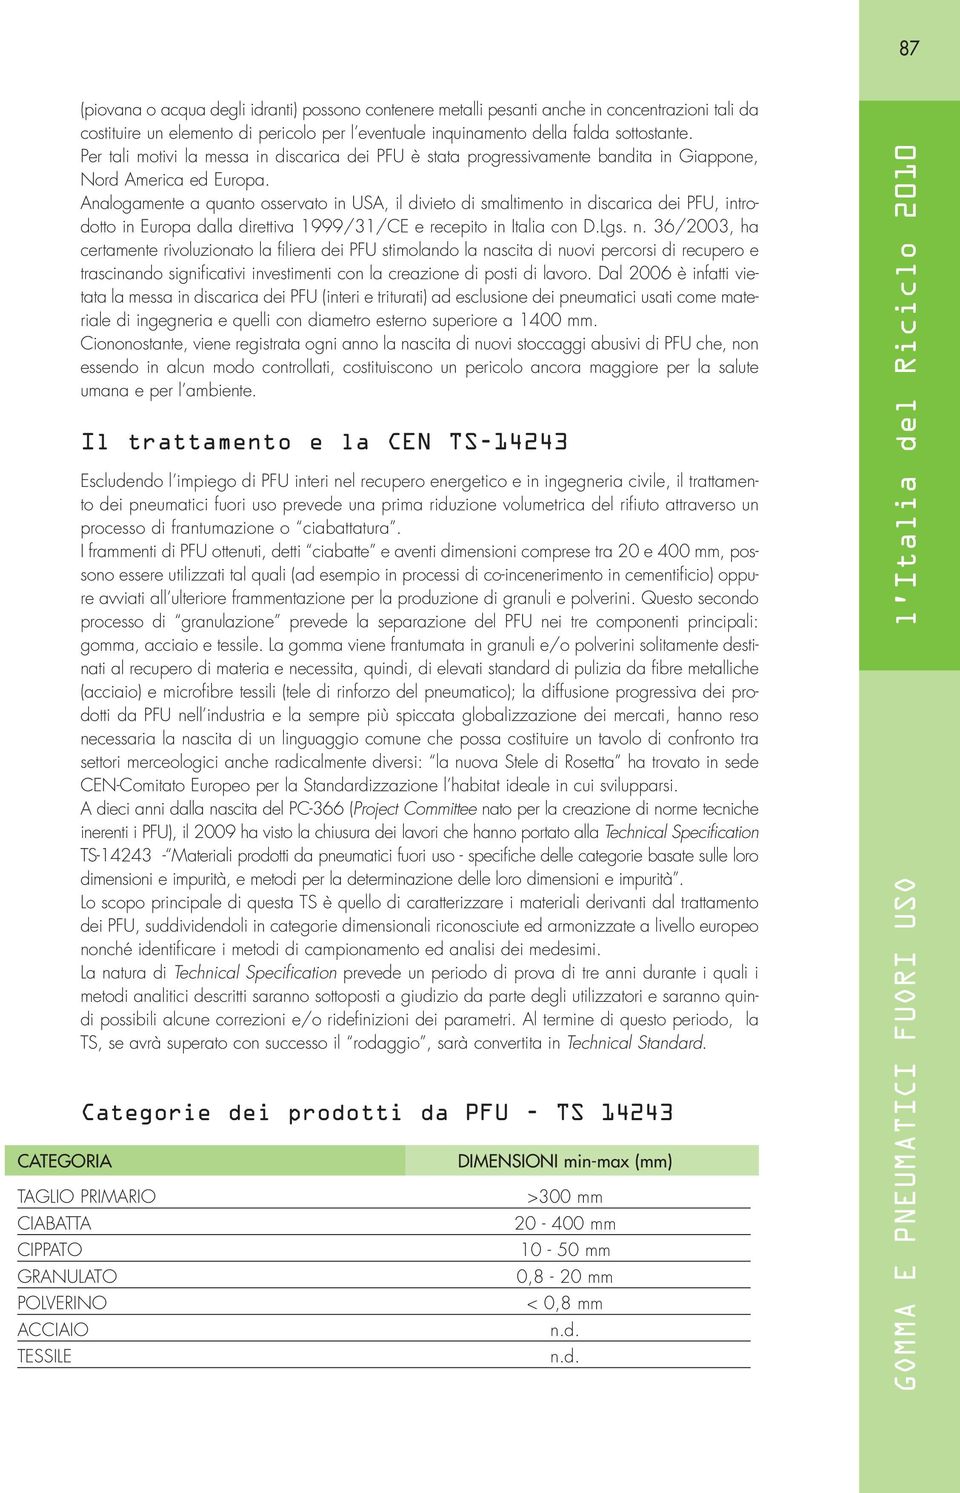 Analogamente a quanto osservato in USA, il divieto di smaltimento in discarica dei PFU, introdotto in Europa dalla direttiva 1999/31/CE e recepito in Italia con D.Lgs. n.